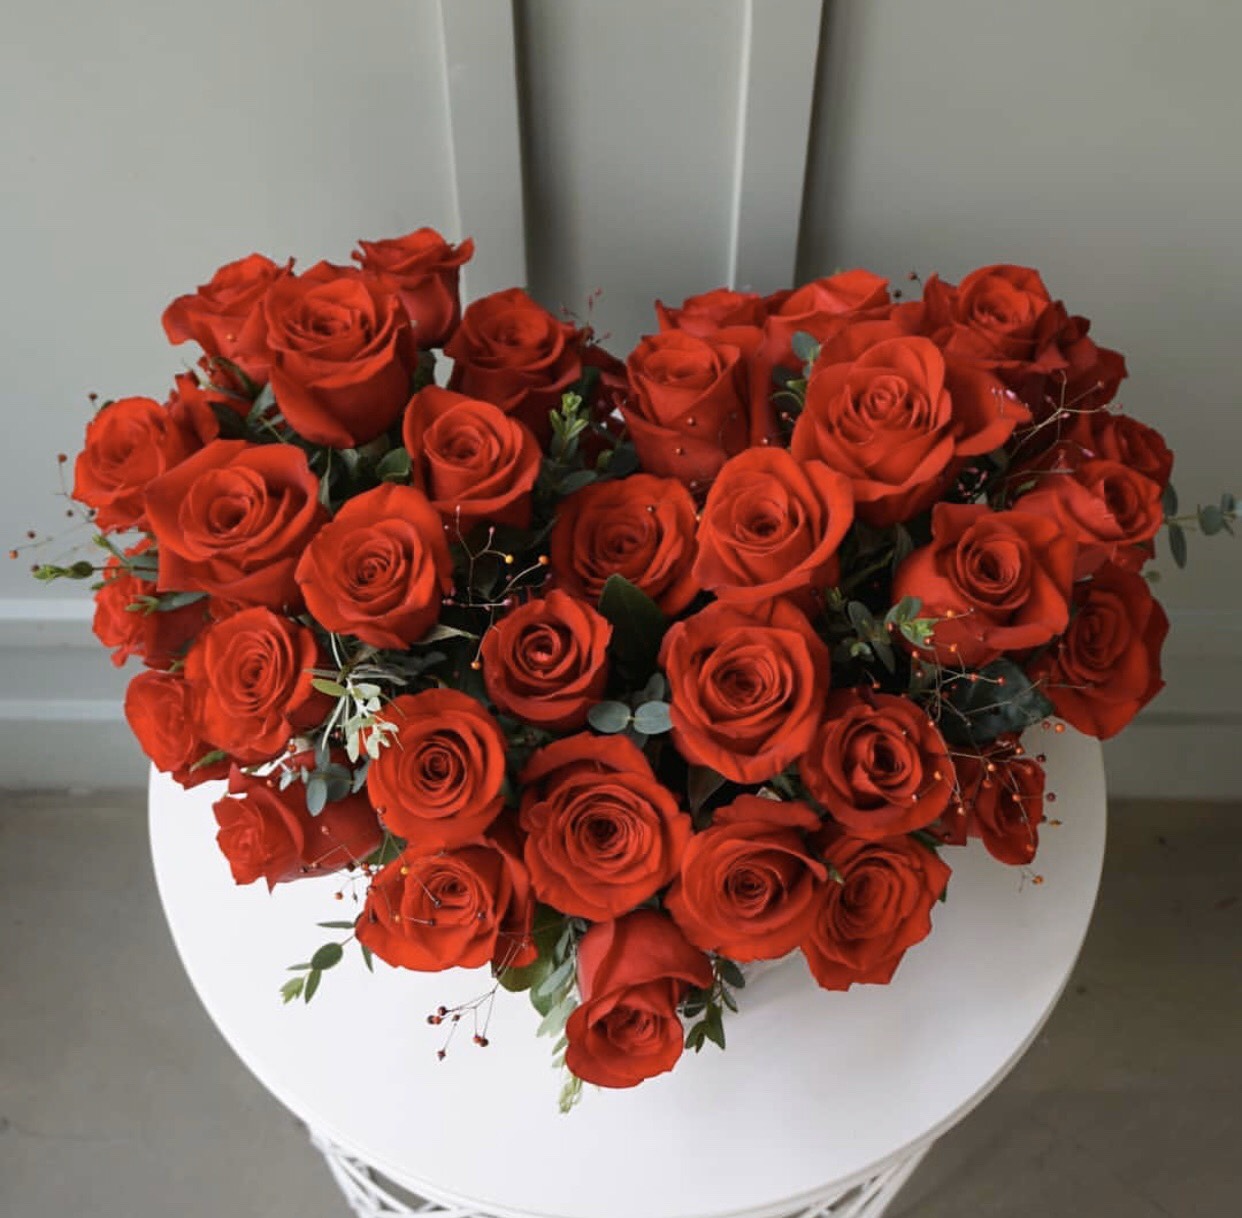 Hộp hoa hồng đỏ hình trái tim lãng mạn